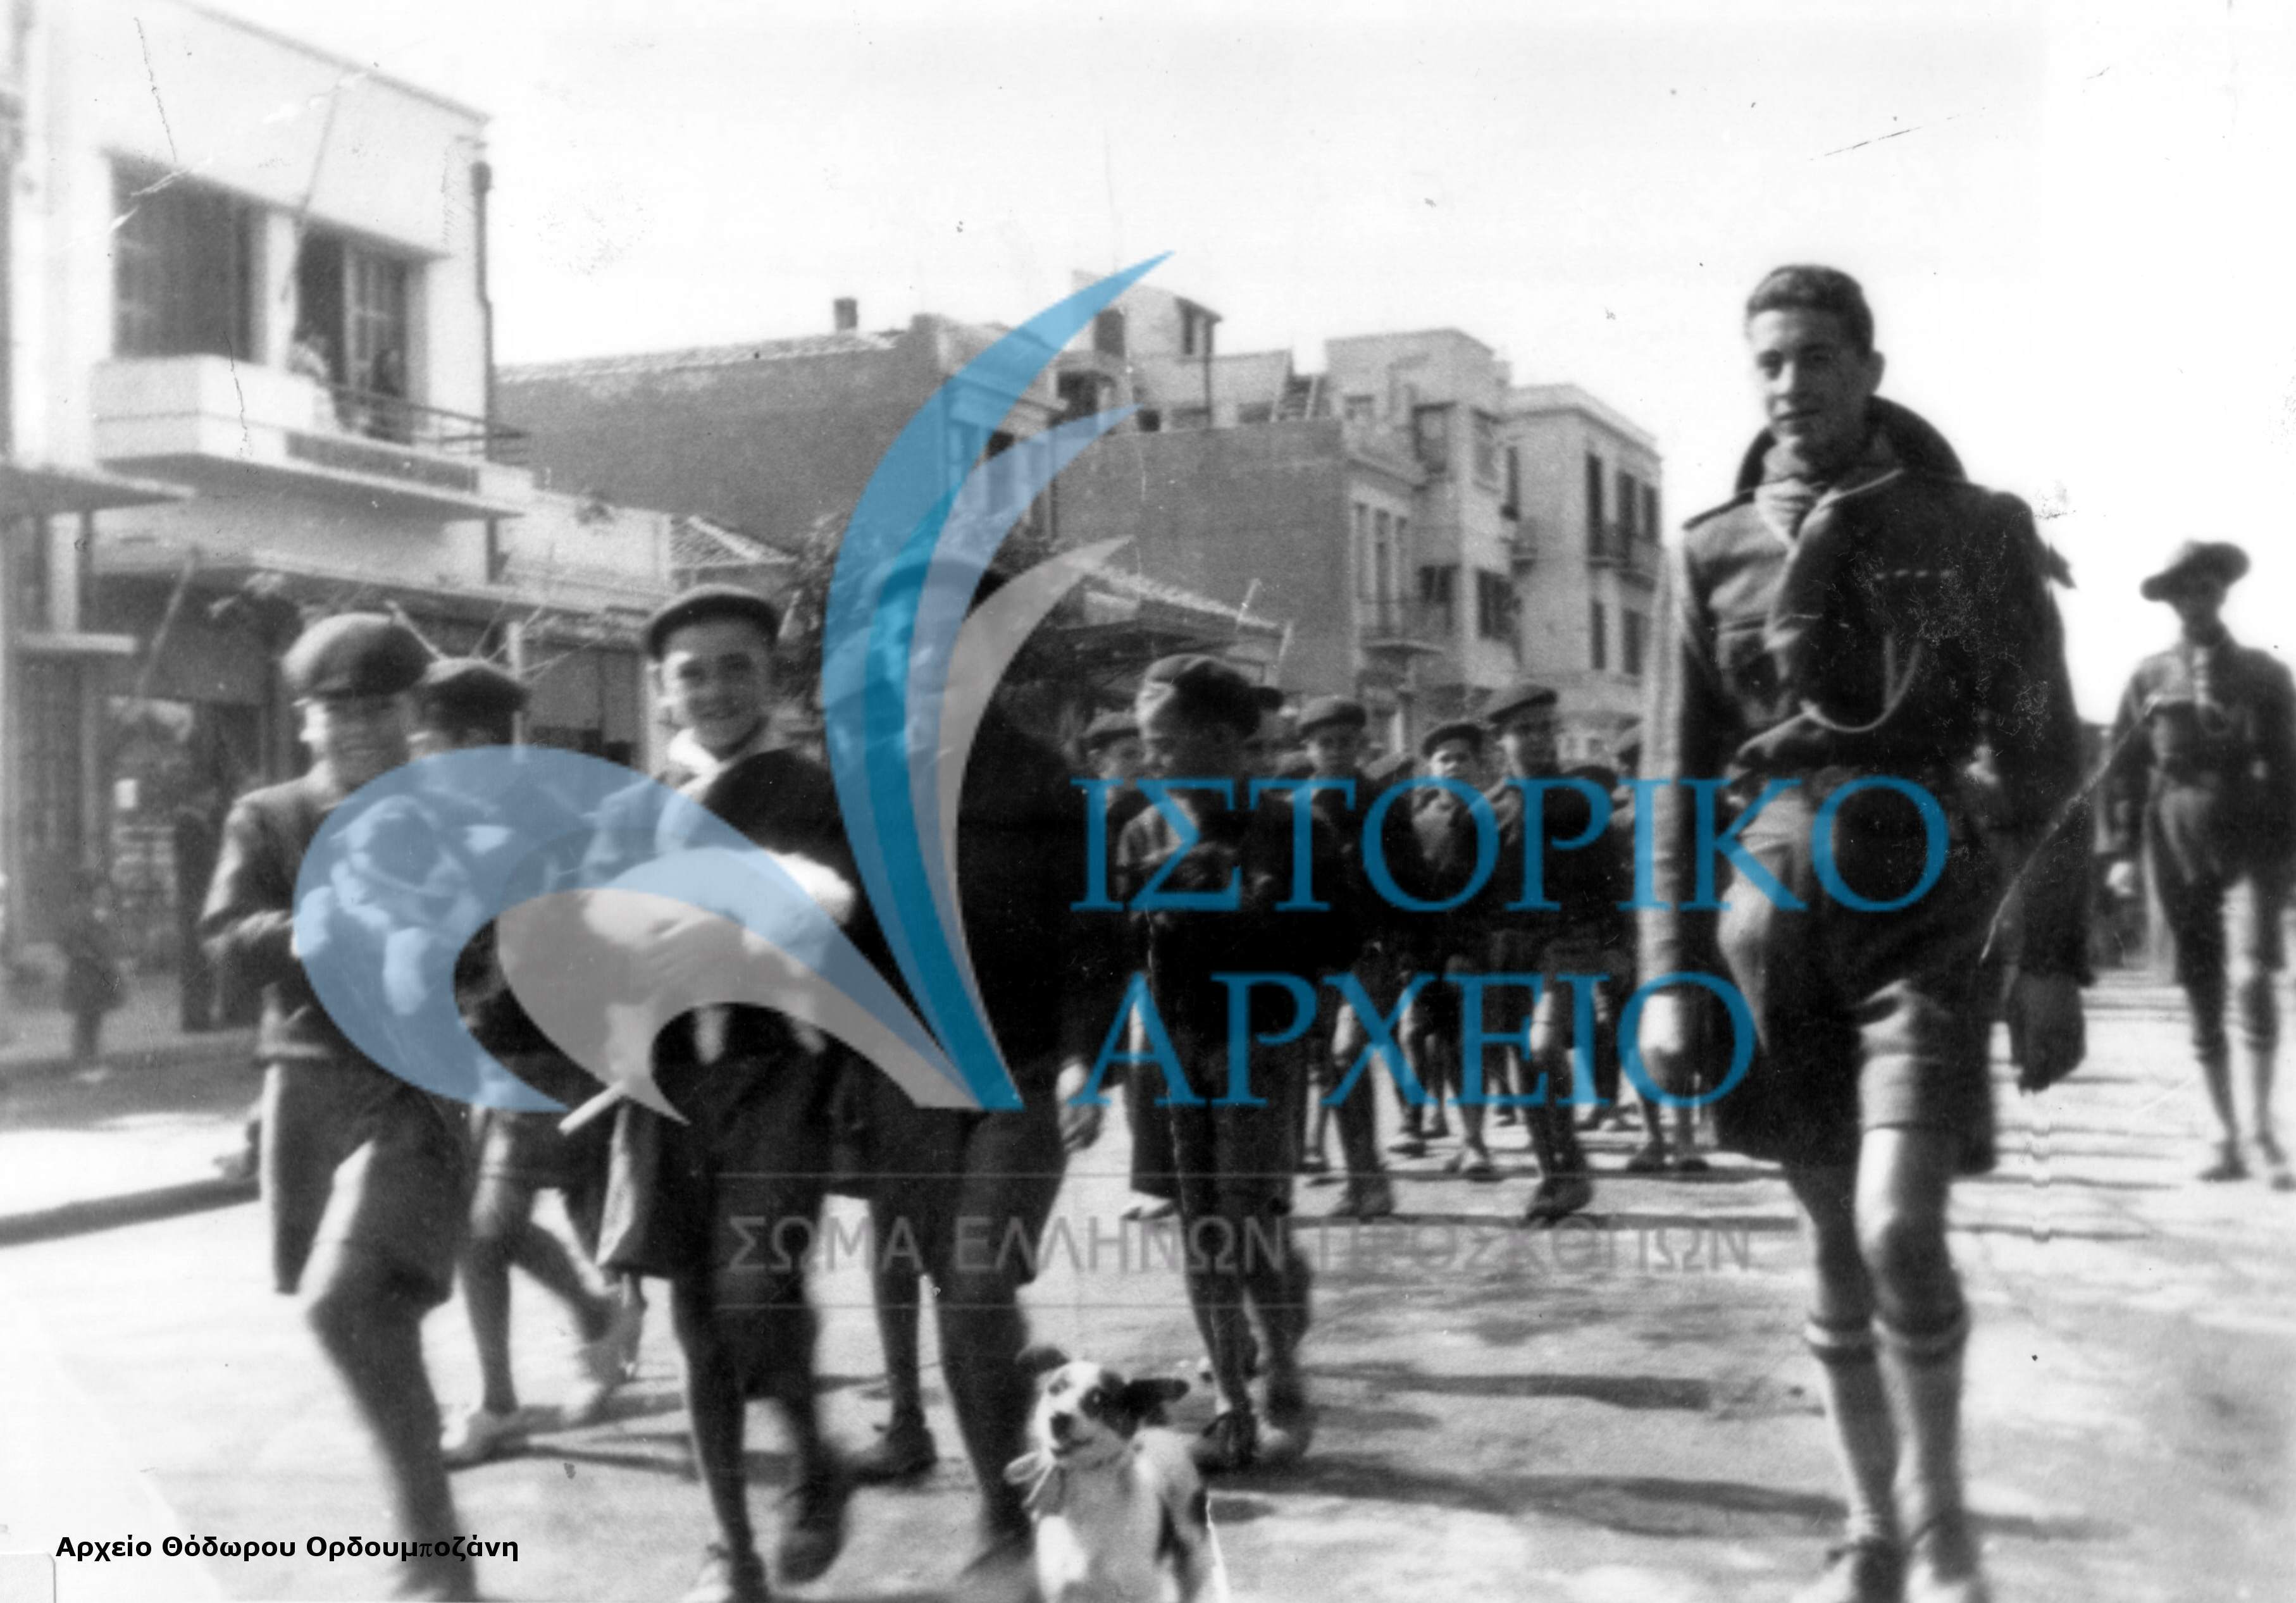 Τα λυκόπουλα της 2ης Αγέλης Αλεξανδρούπολης κρατώντας ζωάκια στα χέρια, μαζί με τον Αρχηγό τους Αργύρη Καλογήρου και τον Υπαρχηγό Χαχαμίδη, κατευθύνονται στο χώρο της πλατείας του Σιδηροδρομικού Σταθμού, όπου θα γιορτάσουν τη γιορτή των ζώων τον Οκτώβριο του 1938.